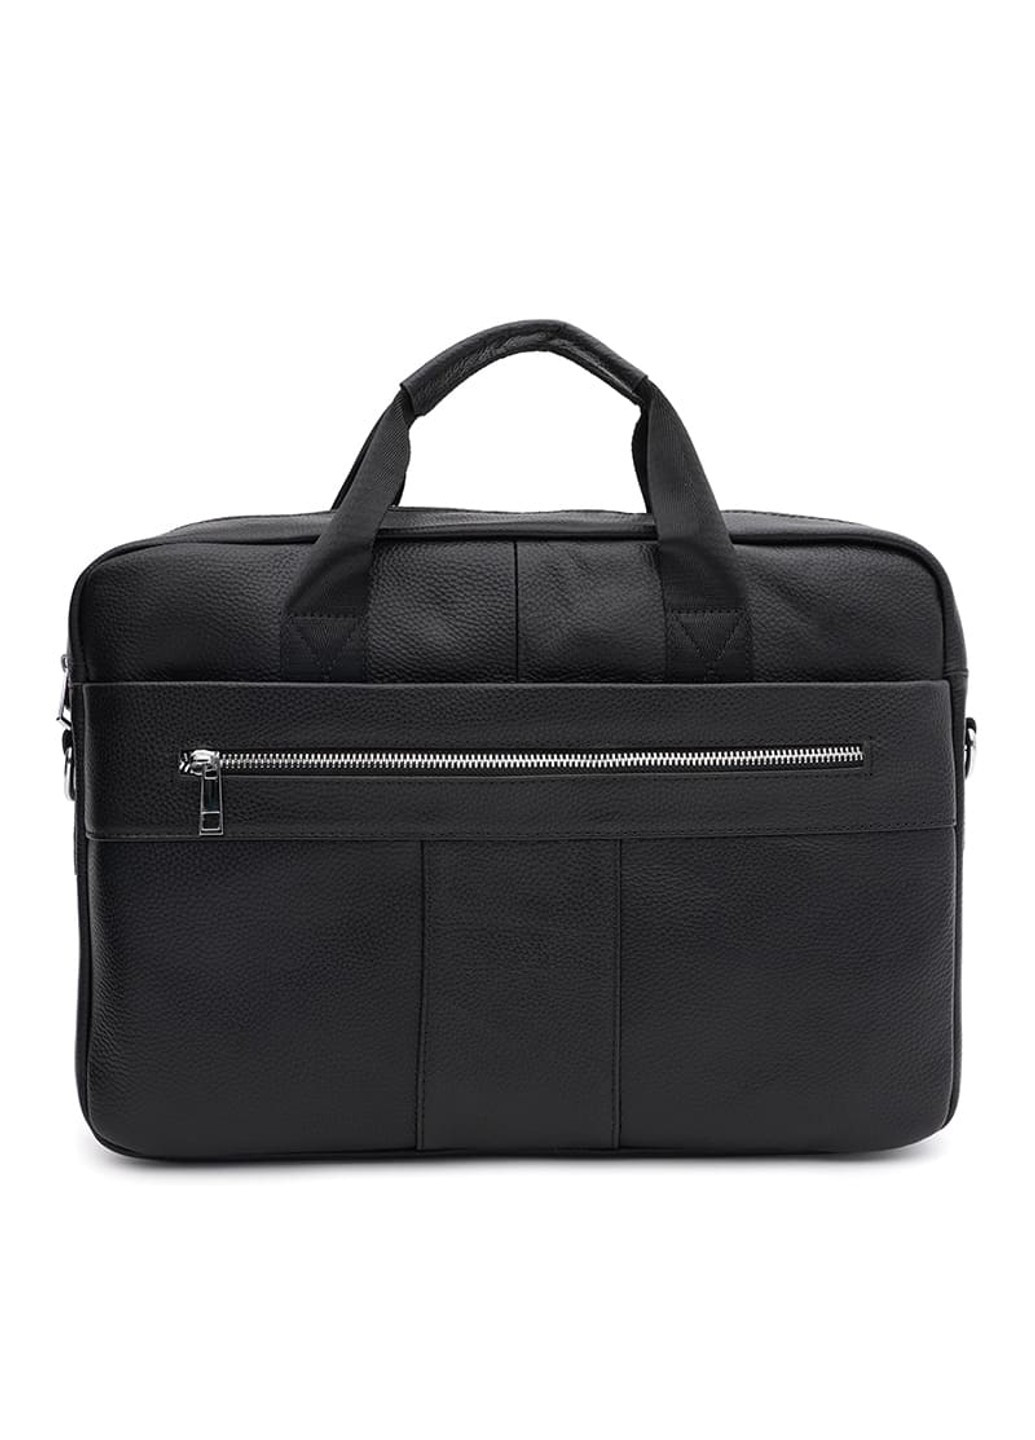 Мужская кожаная сумка - портфель K17068bl-black Keizer (274535872)